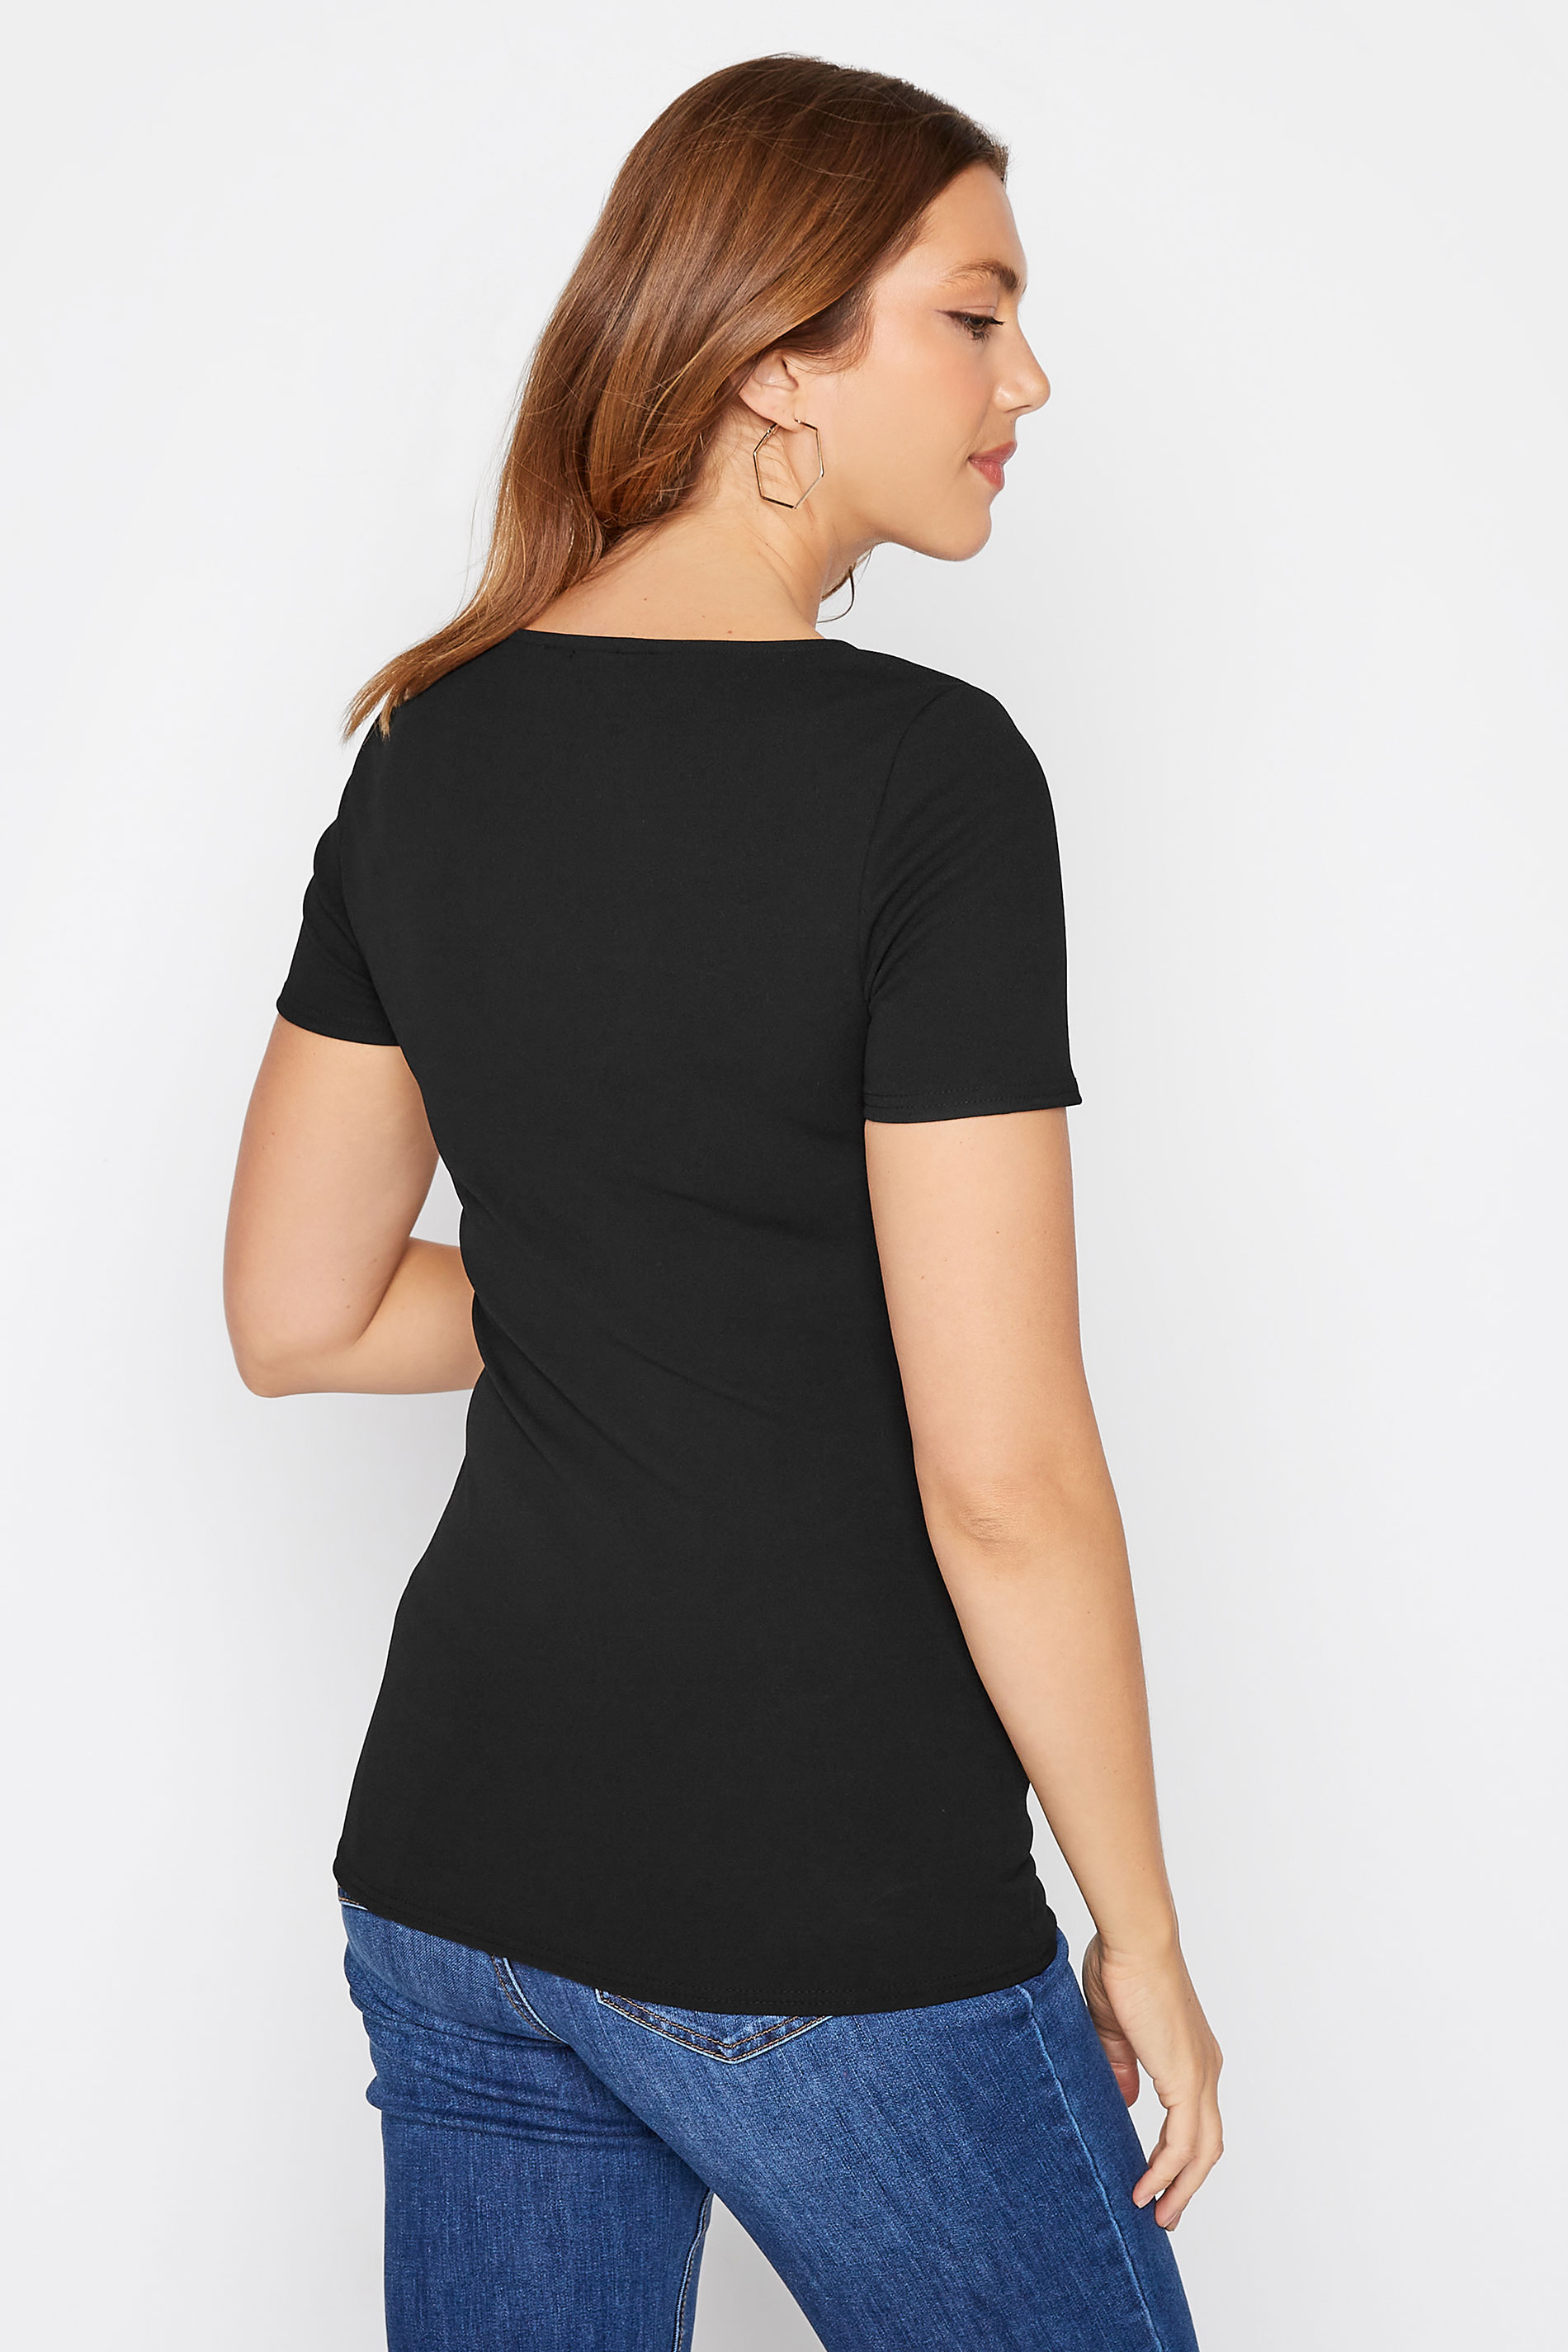 LTS Tall Women's Black Cut Out Detail T-Shirt | Long Tall Sally 3